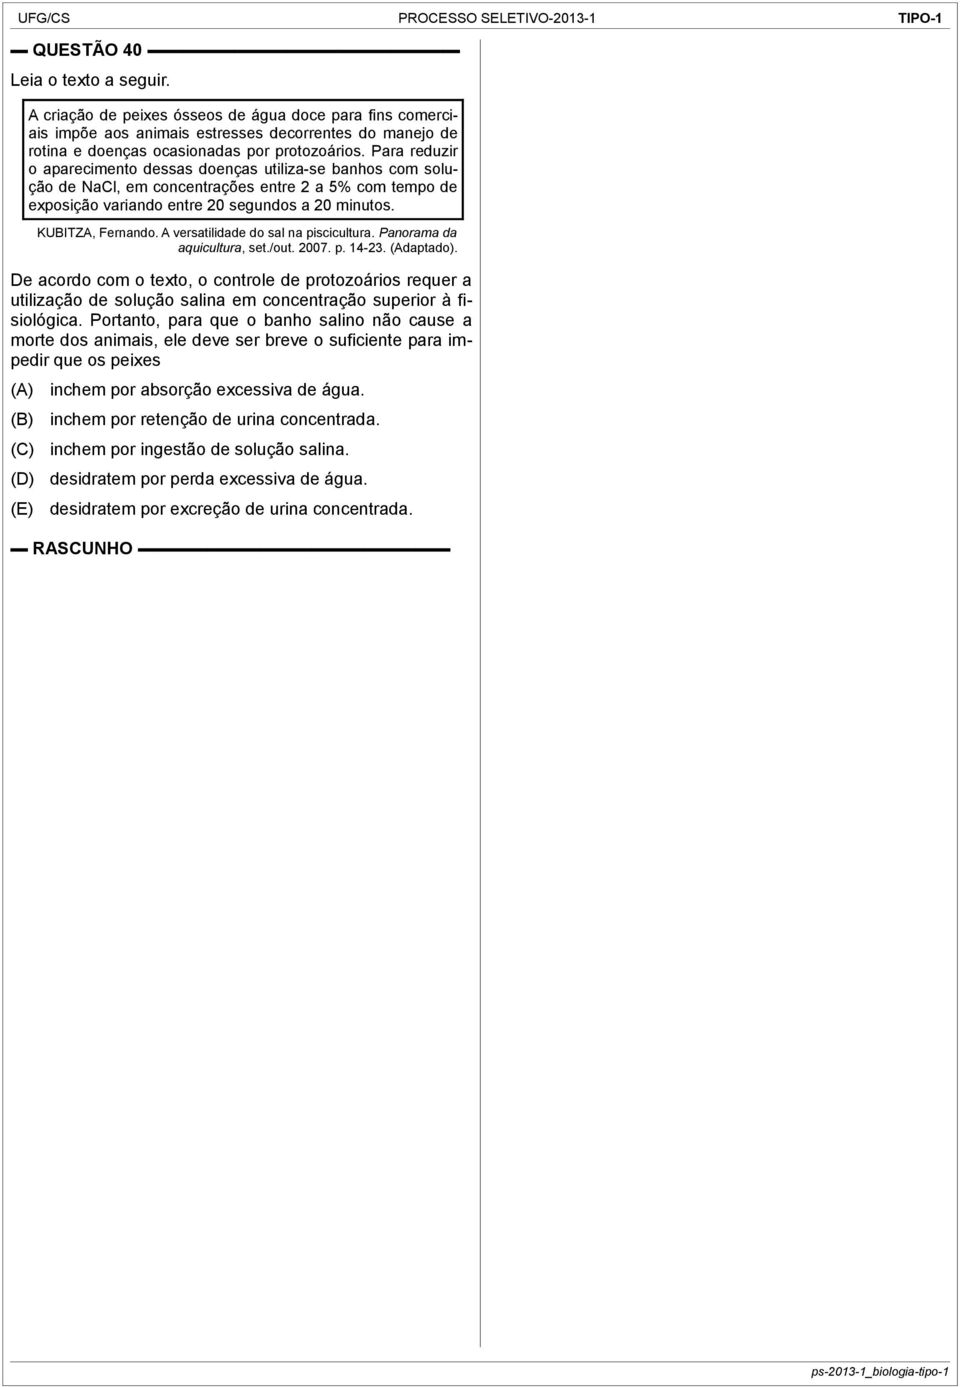 A versatilidade do sal na piscicultura. Panorama da aquicultura, set./out. 2007. p. 14-23. (Adaptado).